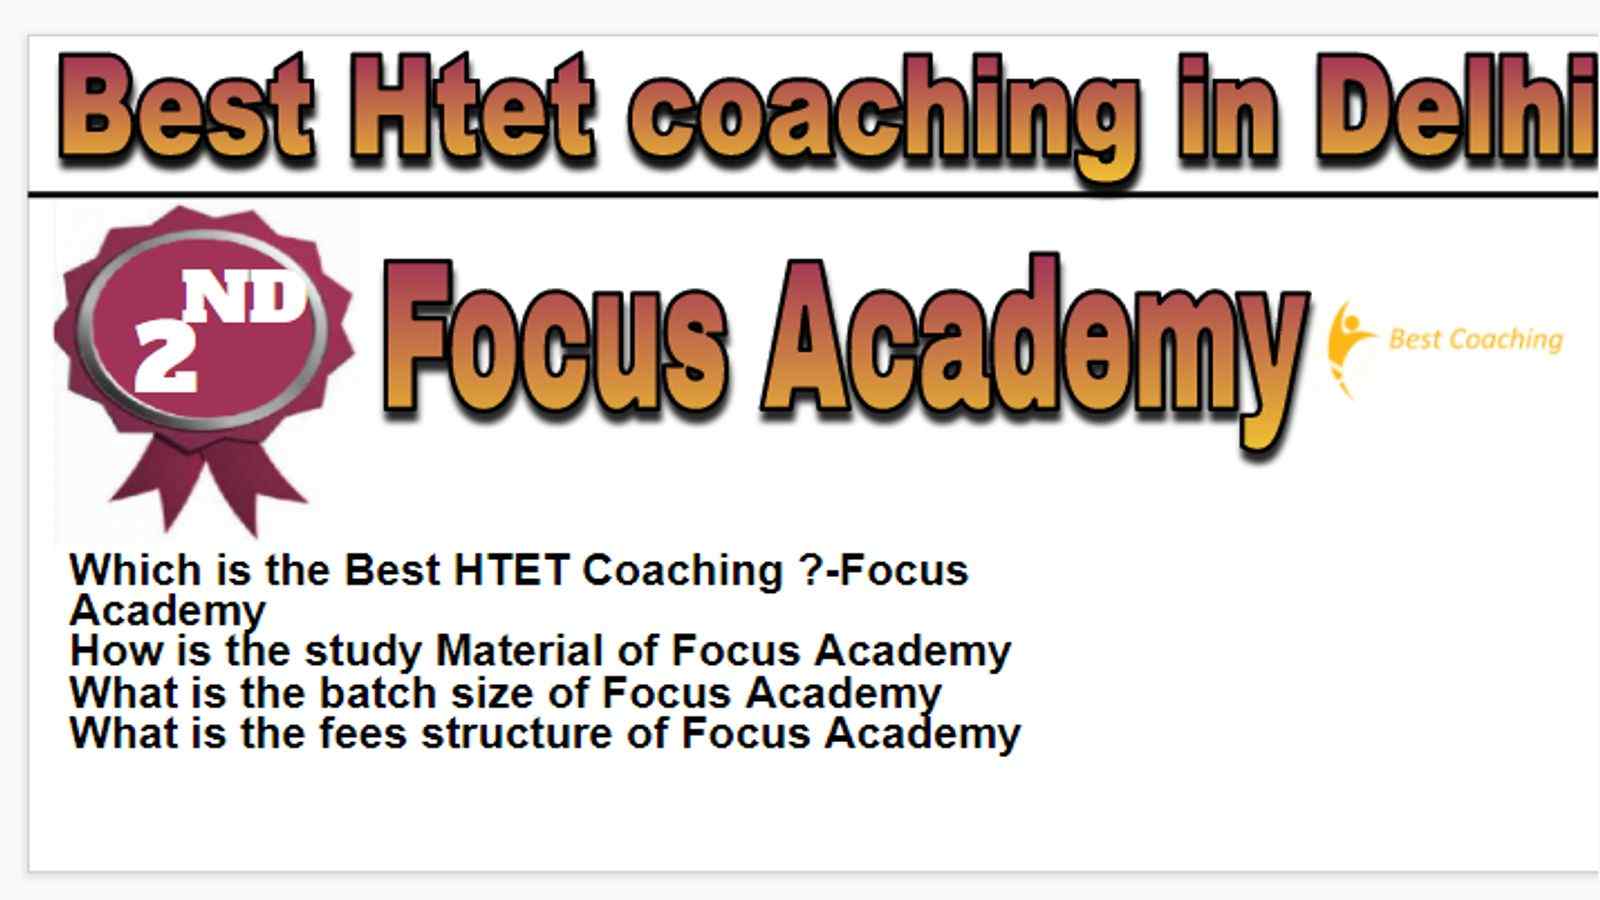 Rank 2 Best Htet coaching in Delhi